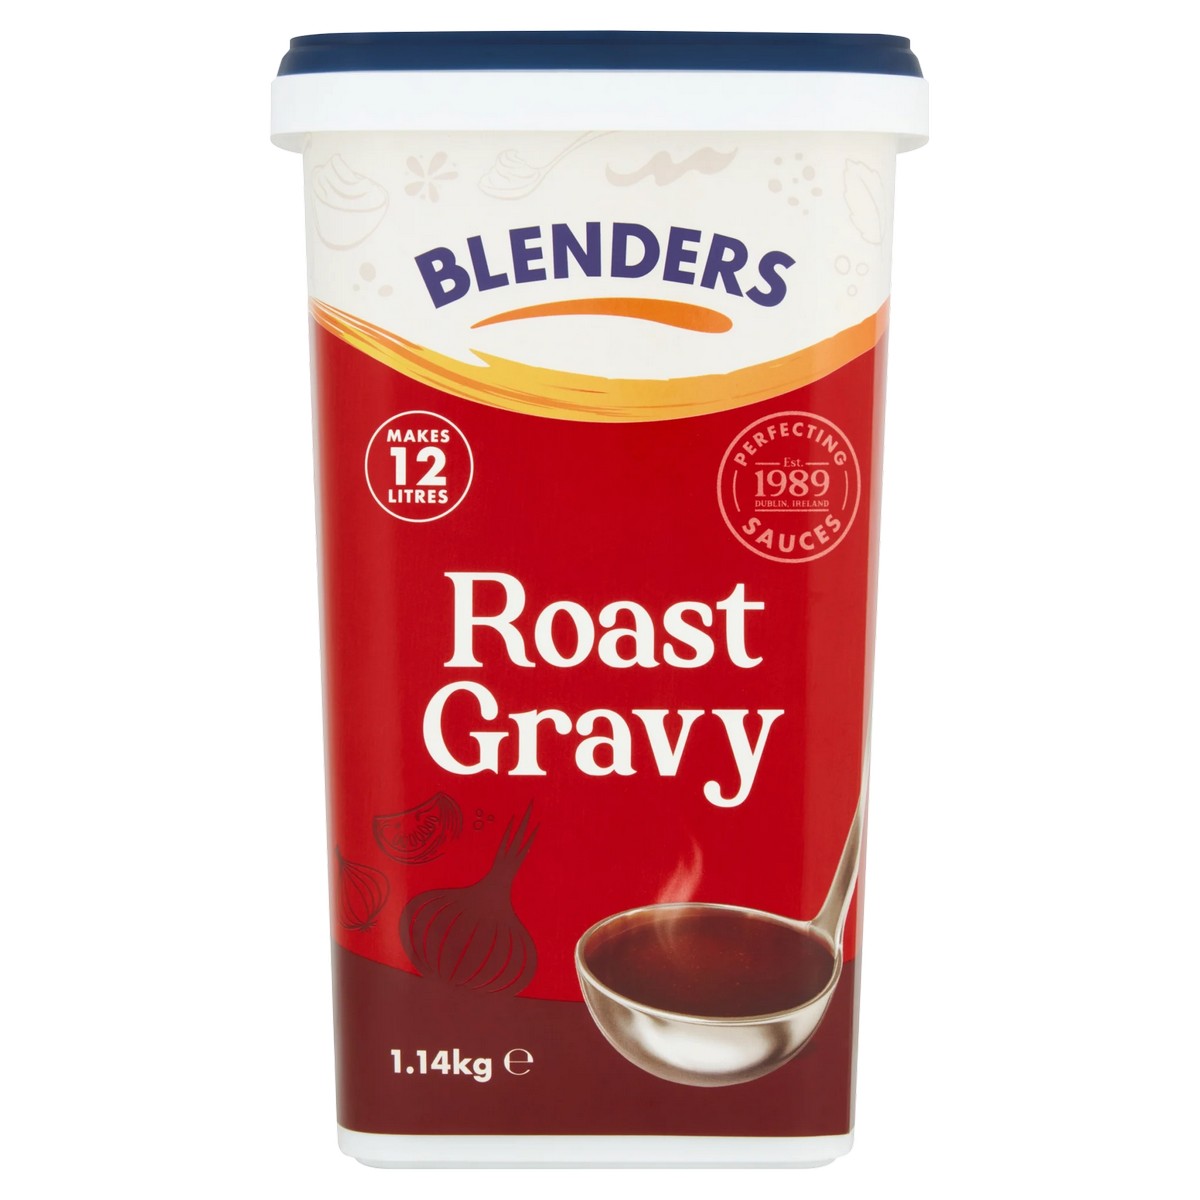 Blenders Roast Gravy 1.14kg